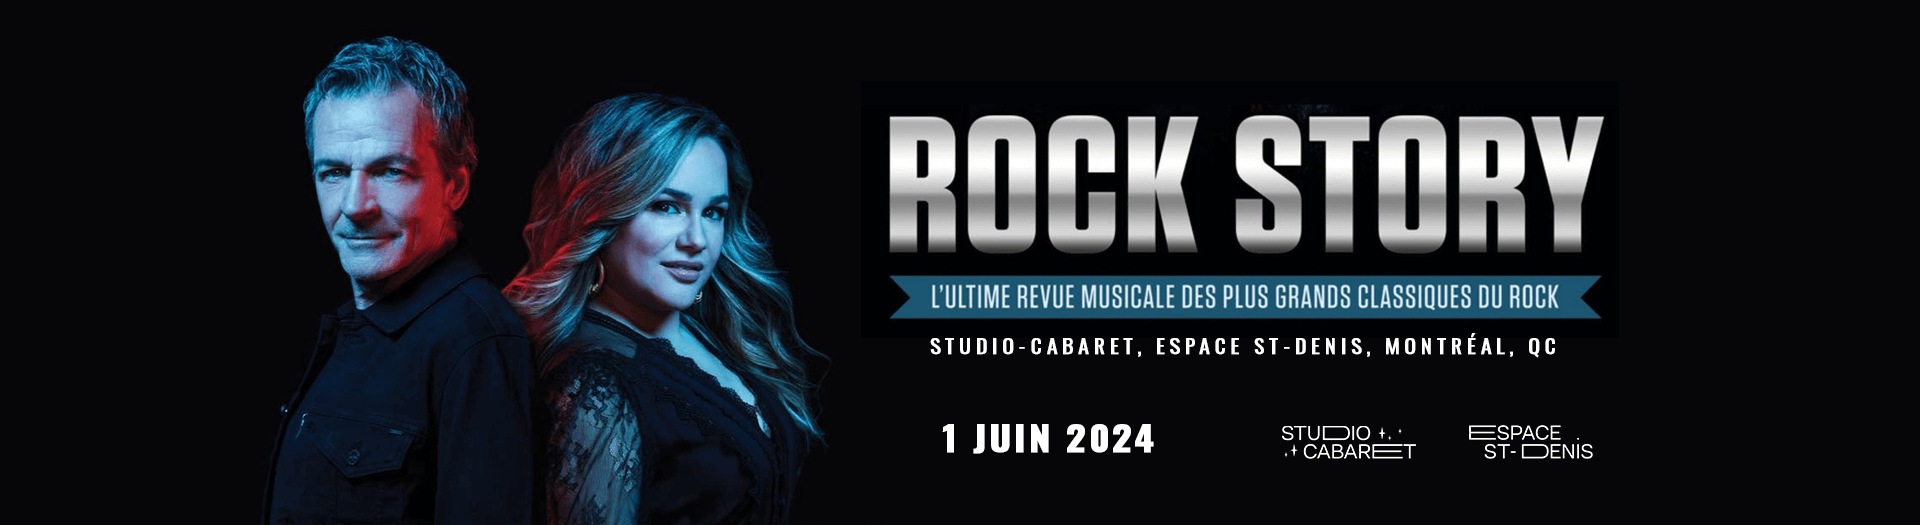 Rock Story, Studio-Cabaret - Espace St-Denis, Montréal